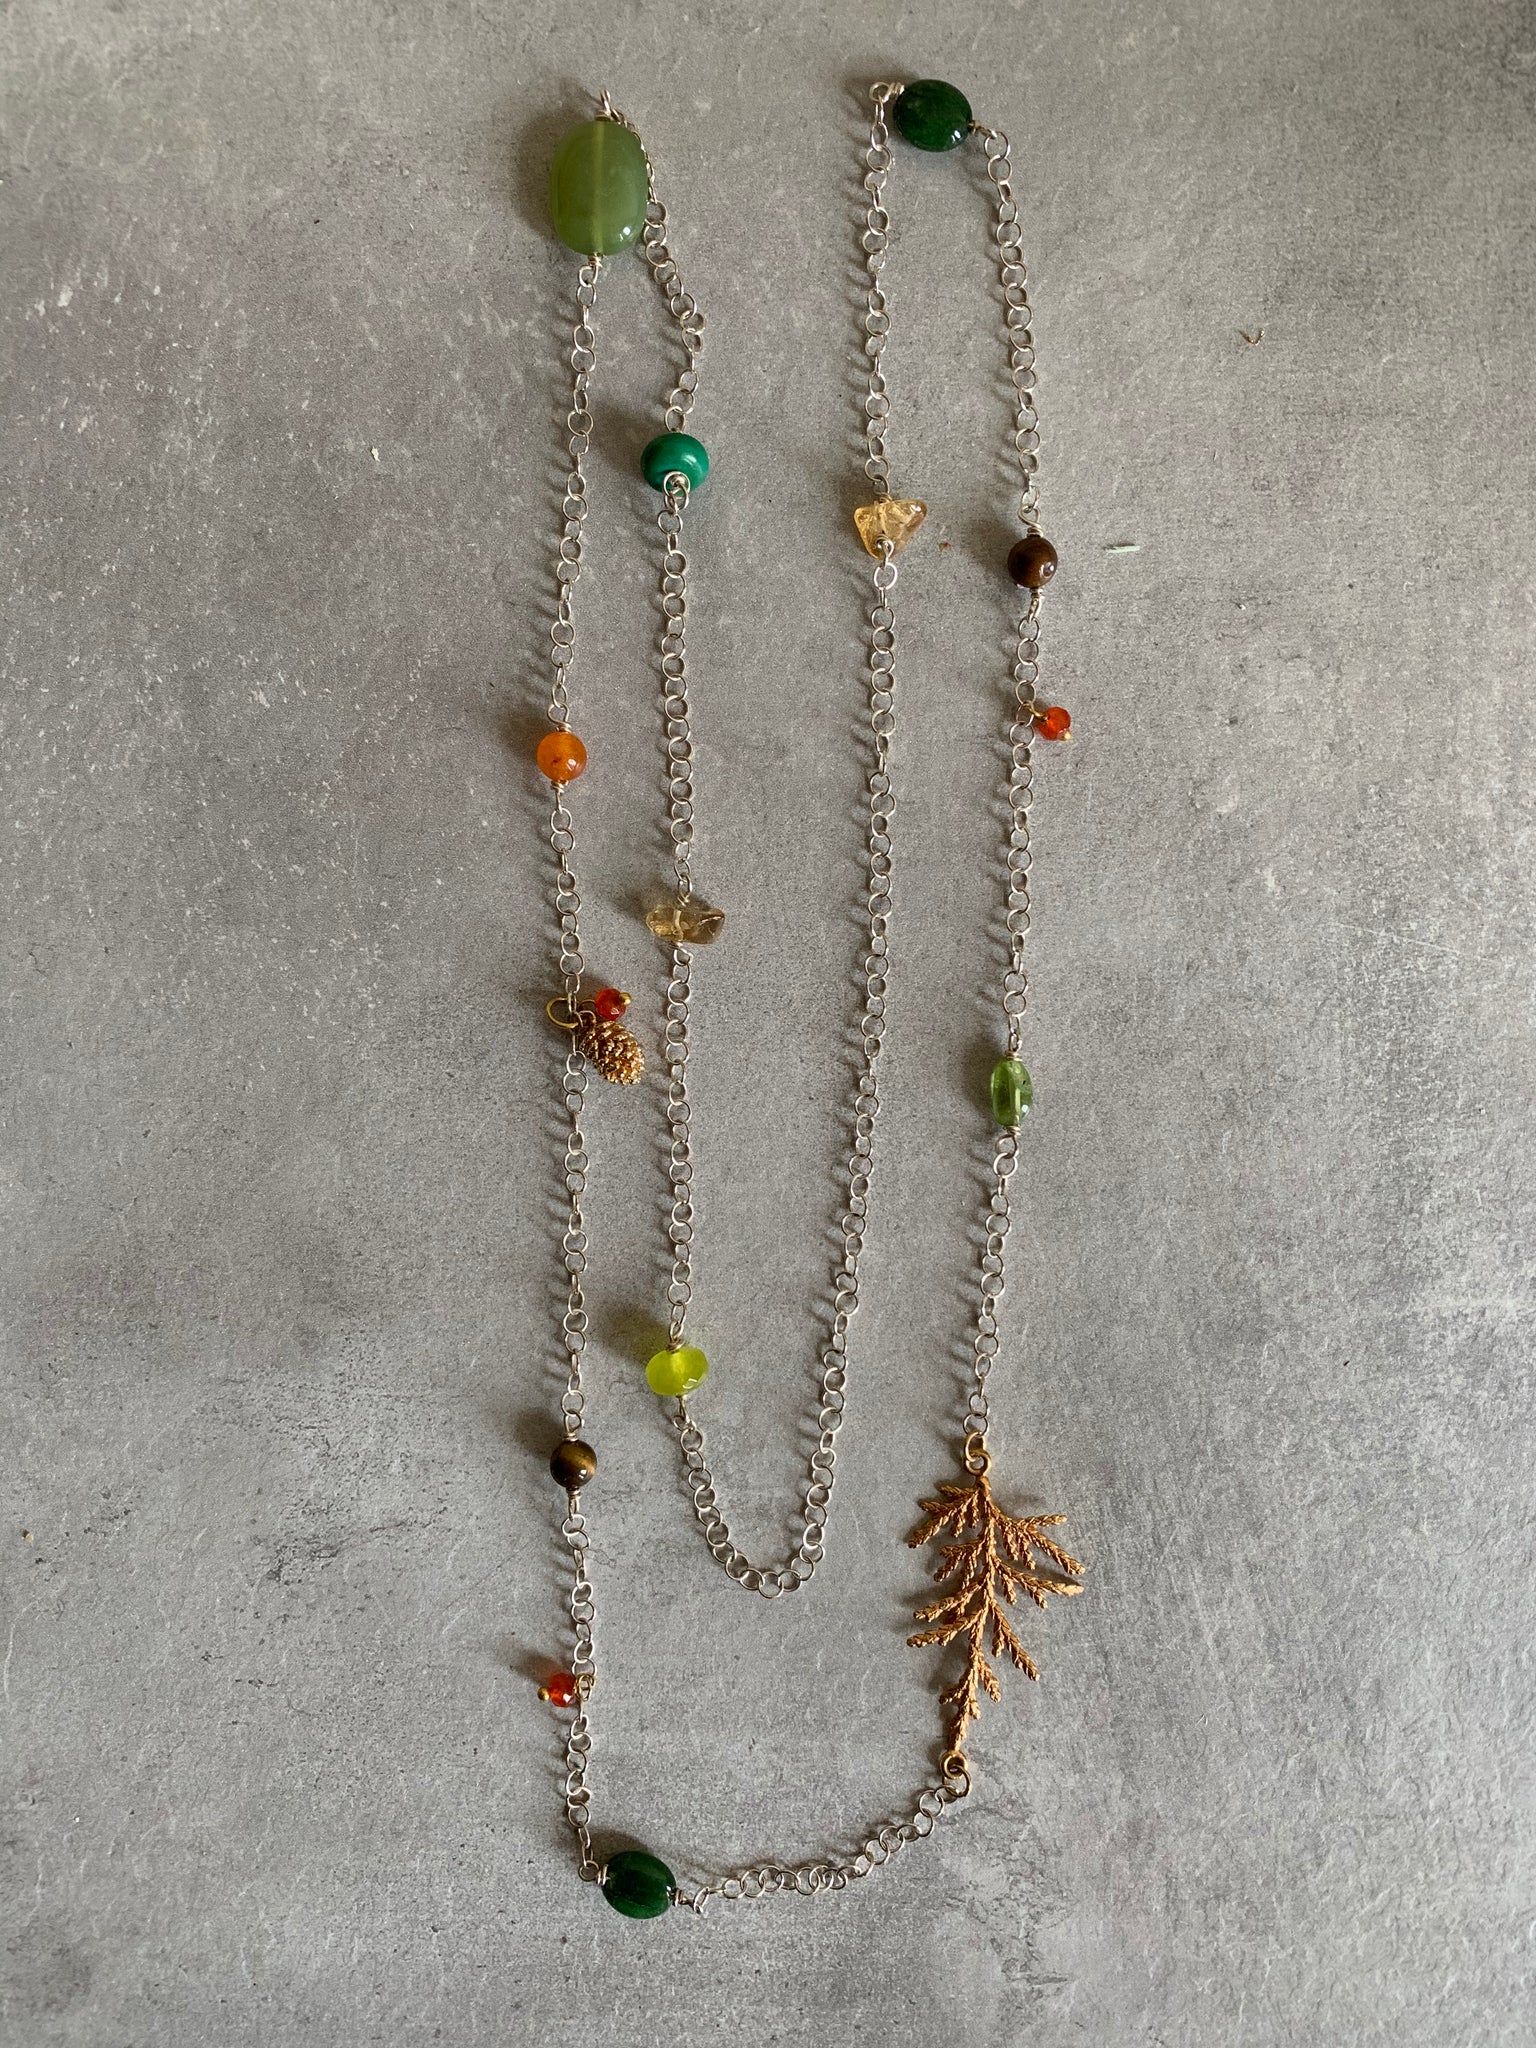 Cedar leaf necklace